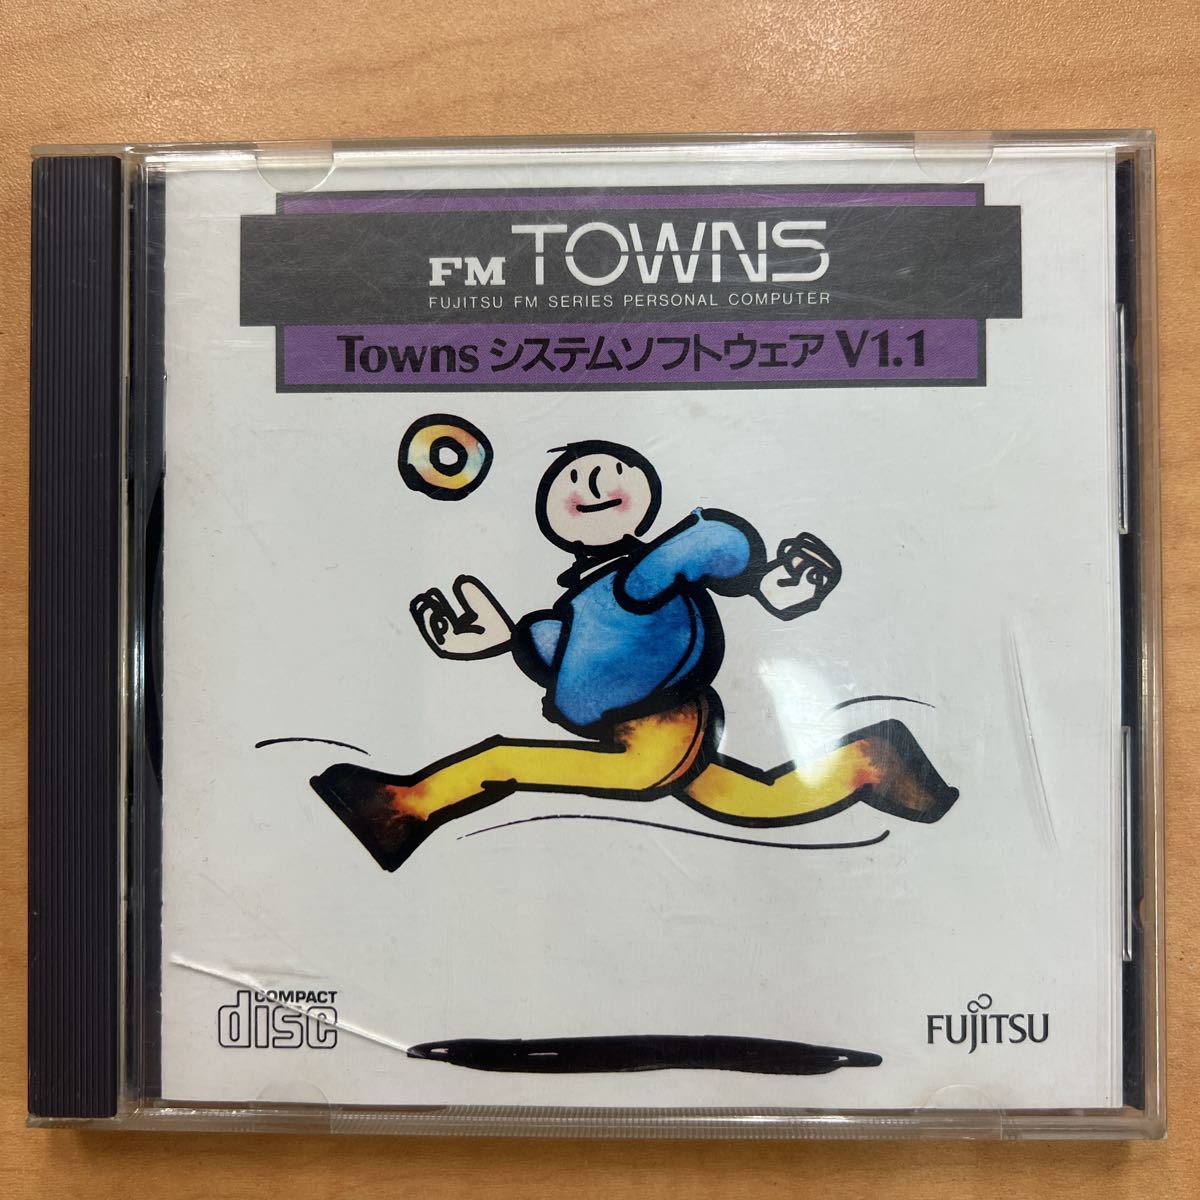 #C06 FM TOWNS システムソフトウェア V1.1 L30 B276A010 FUJITSU 富士通 1989 PC CD-ROM